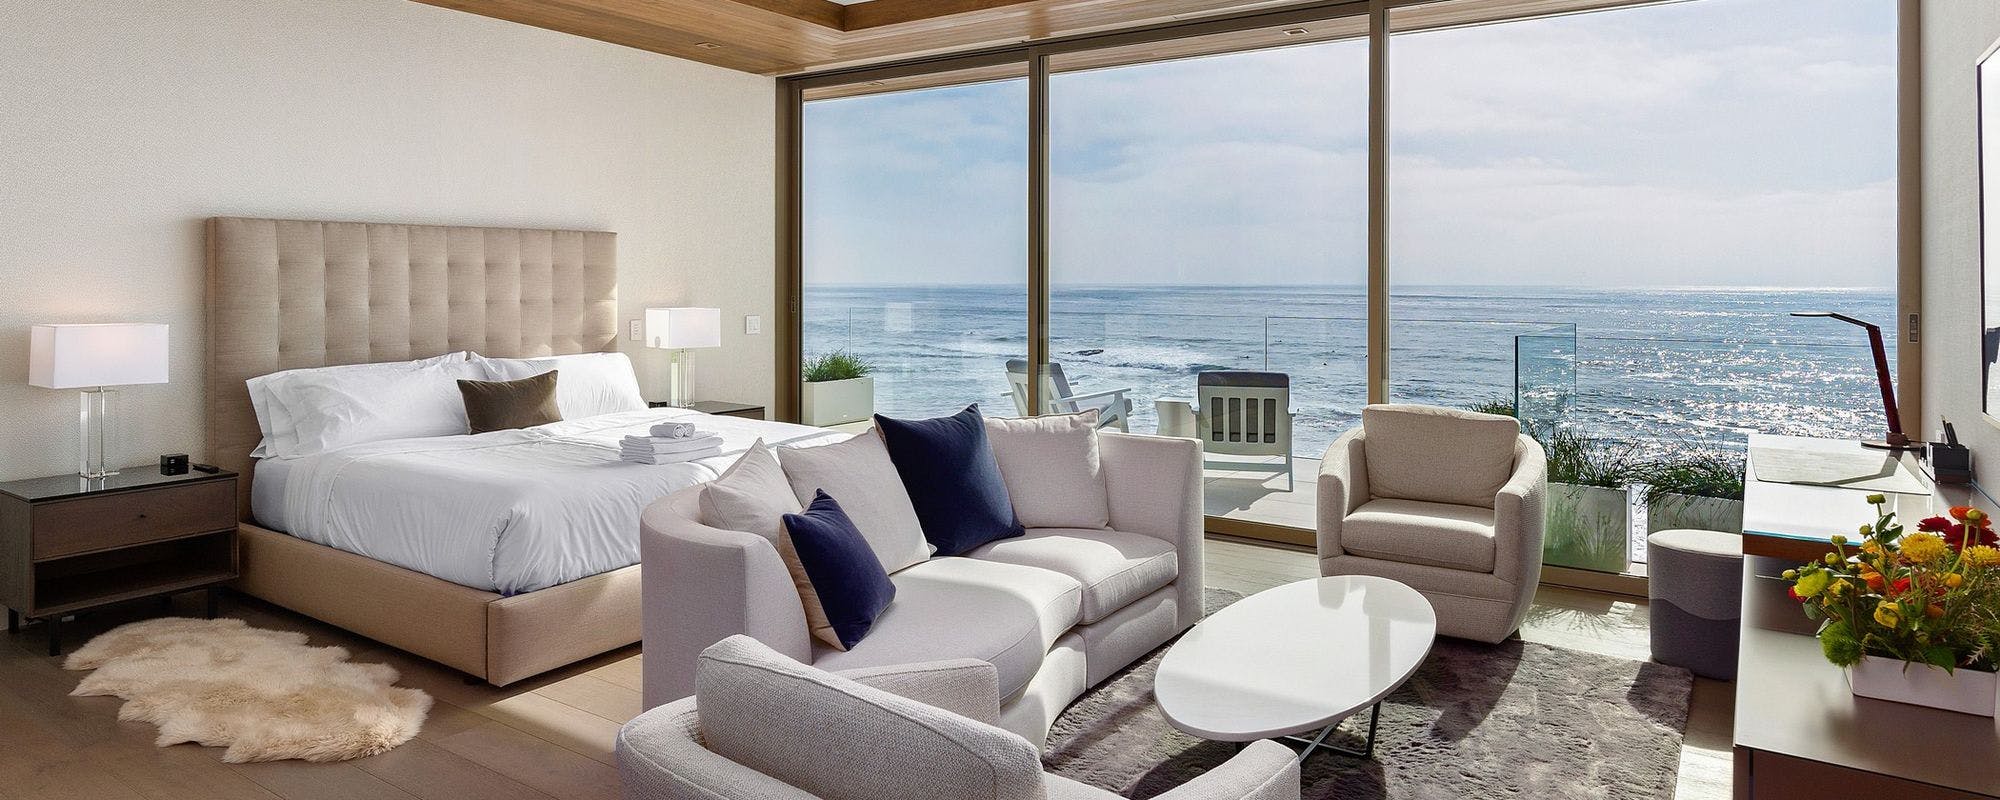 Vacation rental bedroom in San Diego